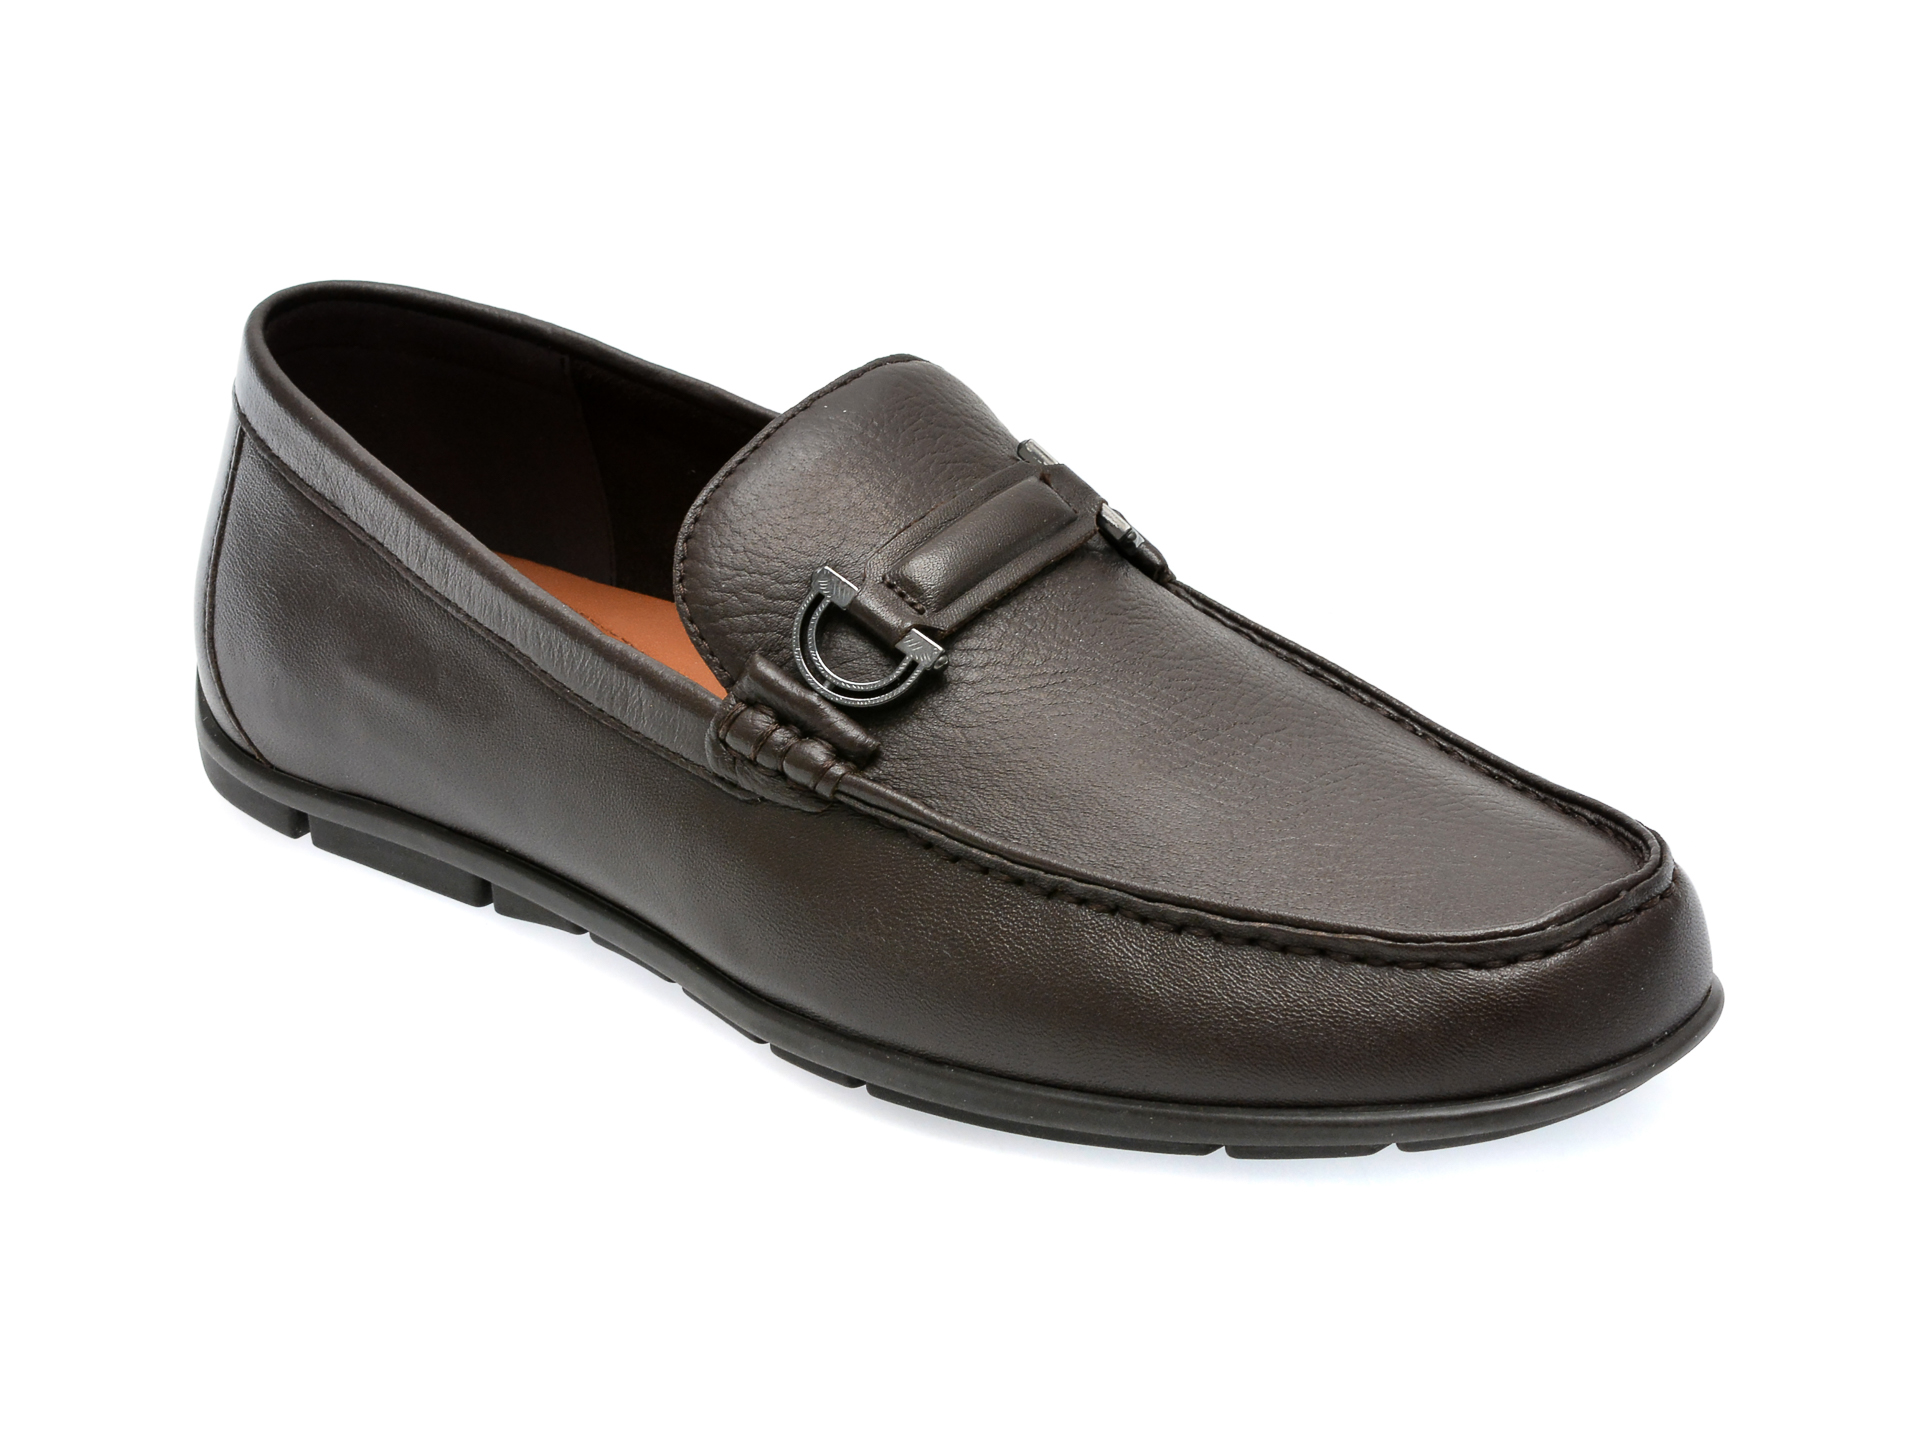 Pantofi ALDO maro, KLAUS201, din piele naturala